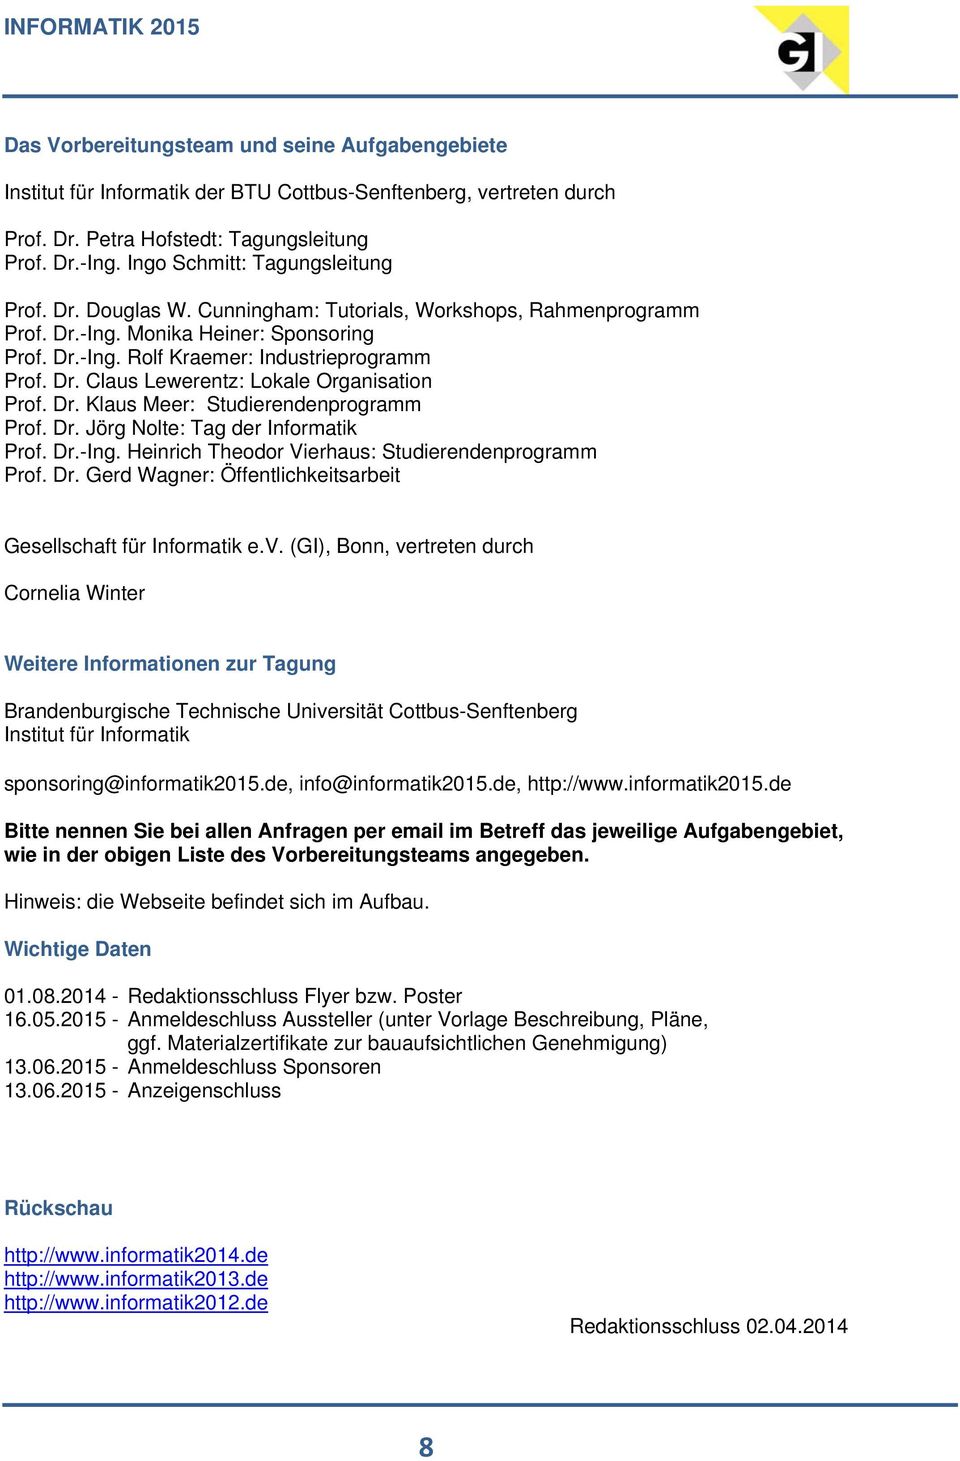 Dr. Klaus Meer: Studierendenprogramm Prof. Dr. Jörg Nolte: Tag der Informatik Prof. Dr.-Ing. Heinrich Theodor Vierhaus: Studierendenprogramm Prof. Dr. Gerd Wagner: Öffentlichkeitsarbeit Gesellschaft für Informatik e.